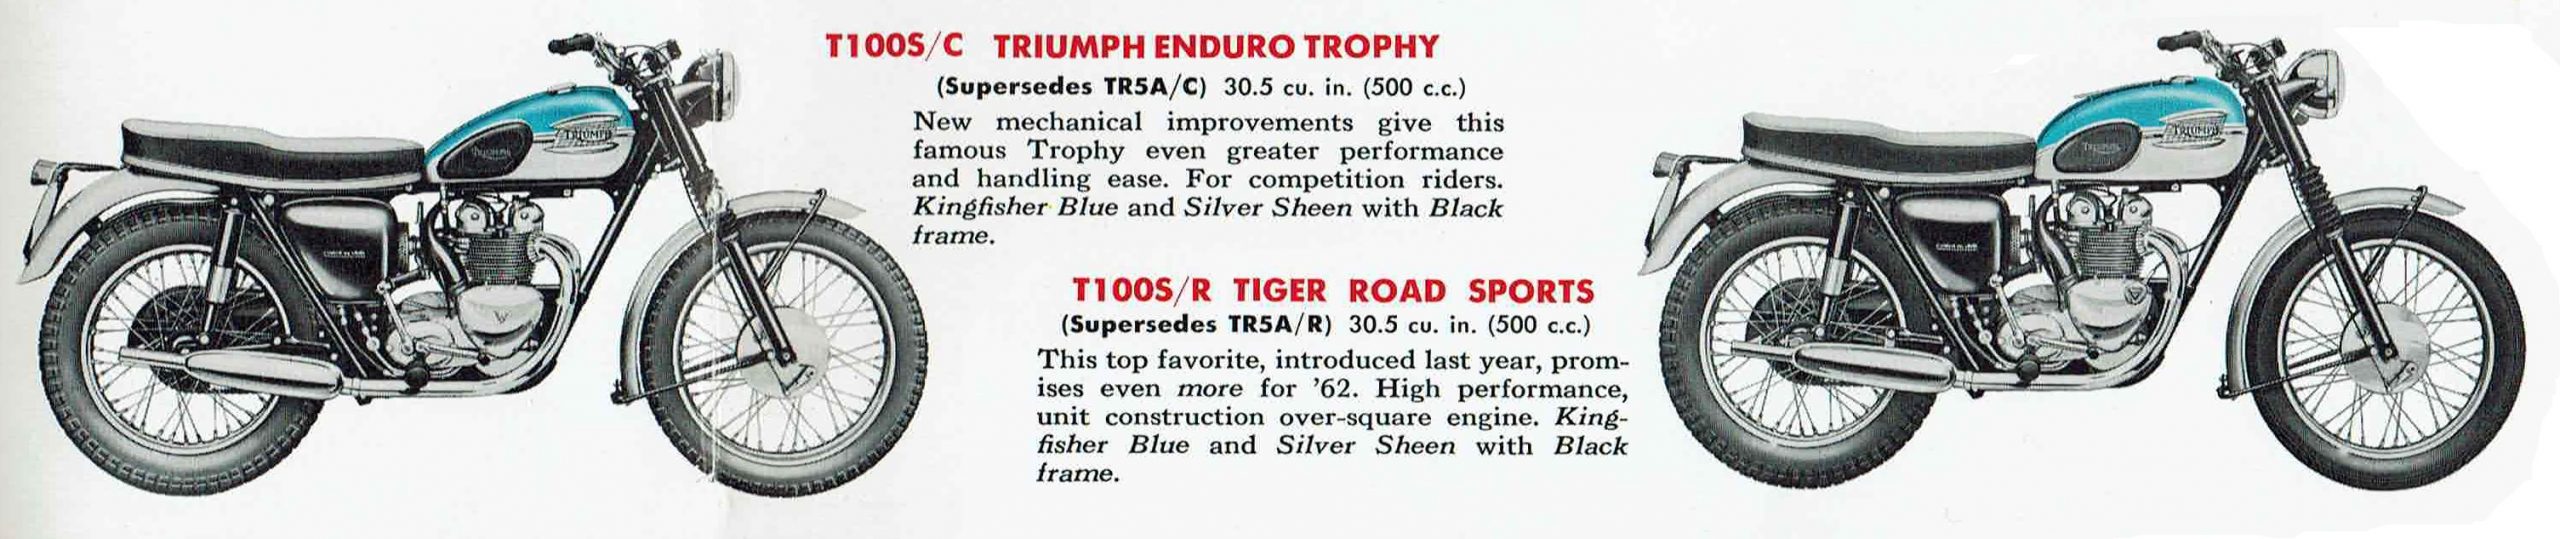 Triumph T120 1963 to 1966 Crankcase Stud set Unit Construction. 